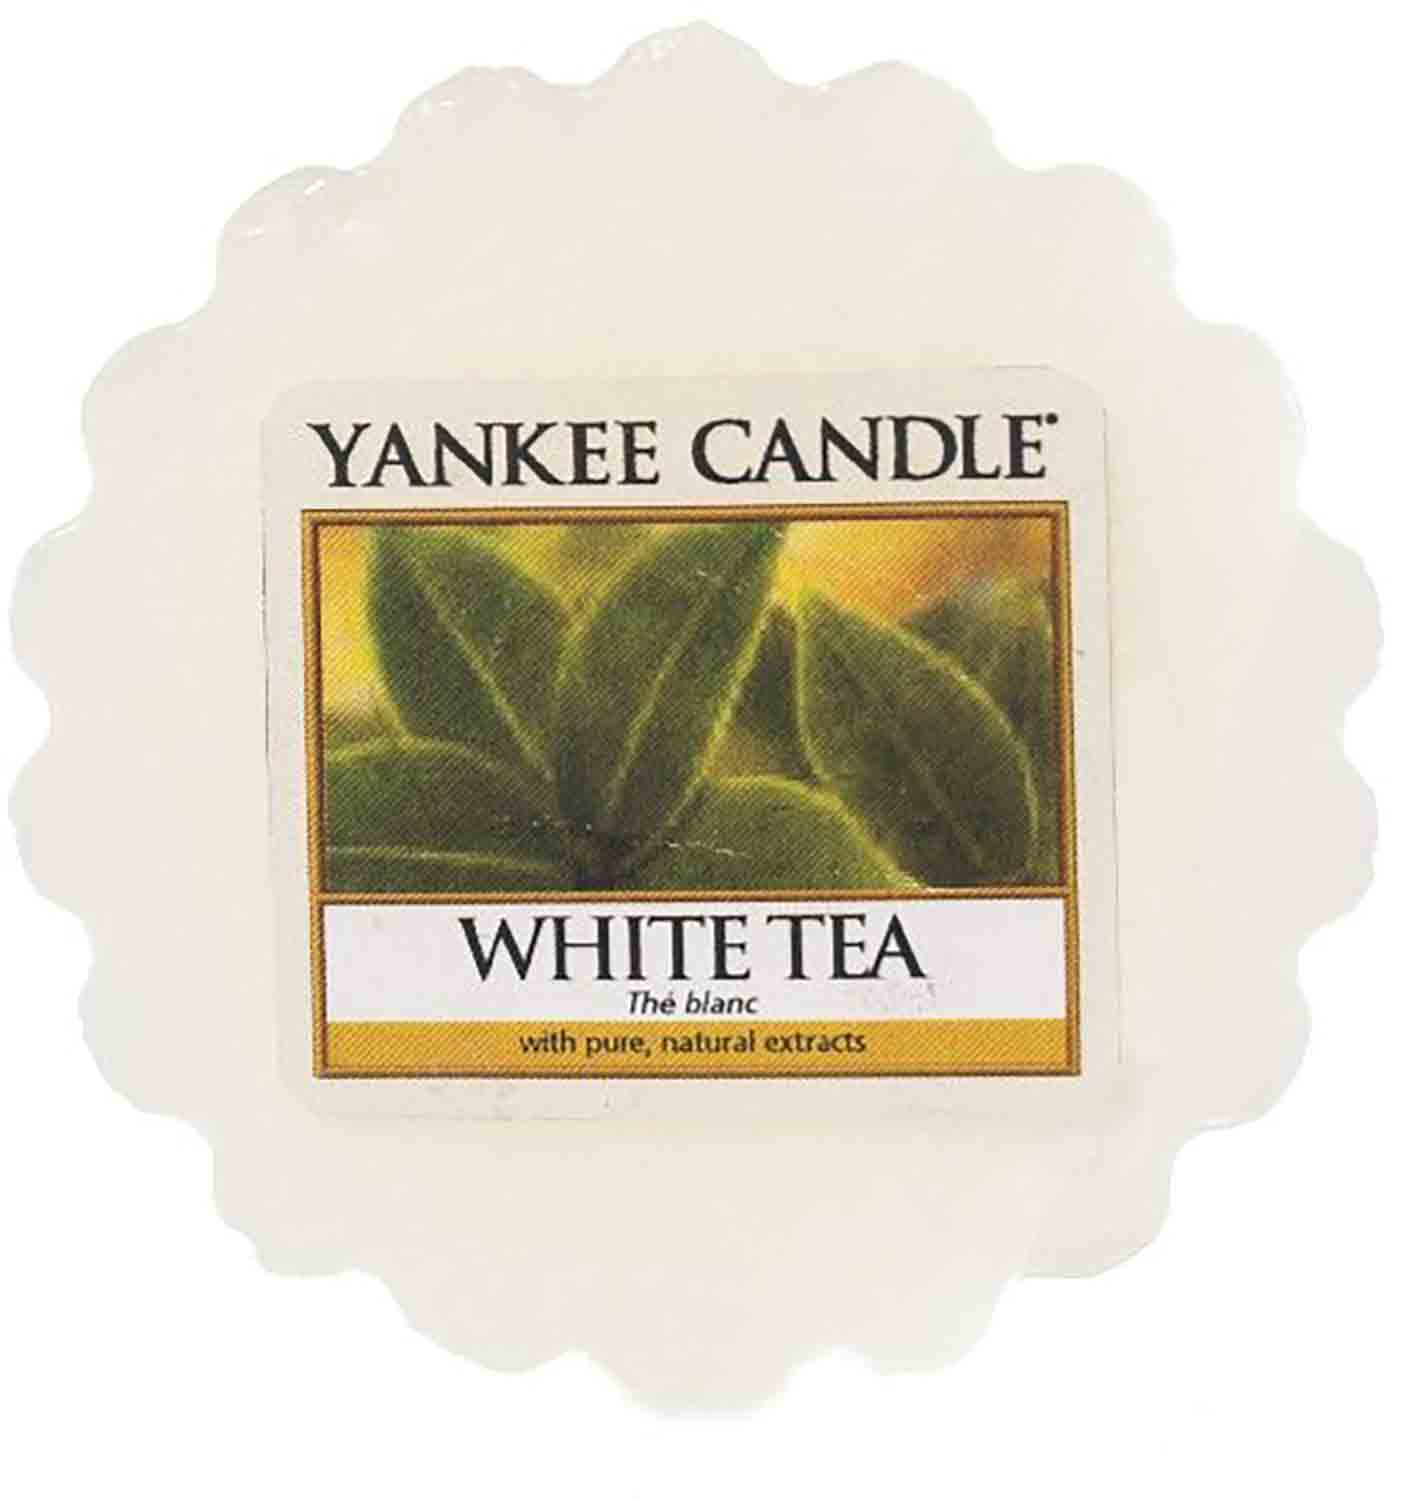 Yankee Candle White Tea 22g vonný vosk